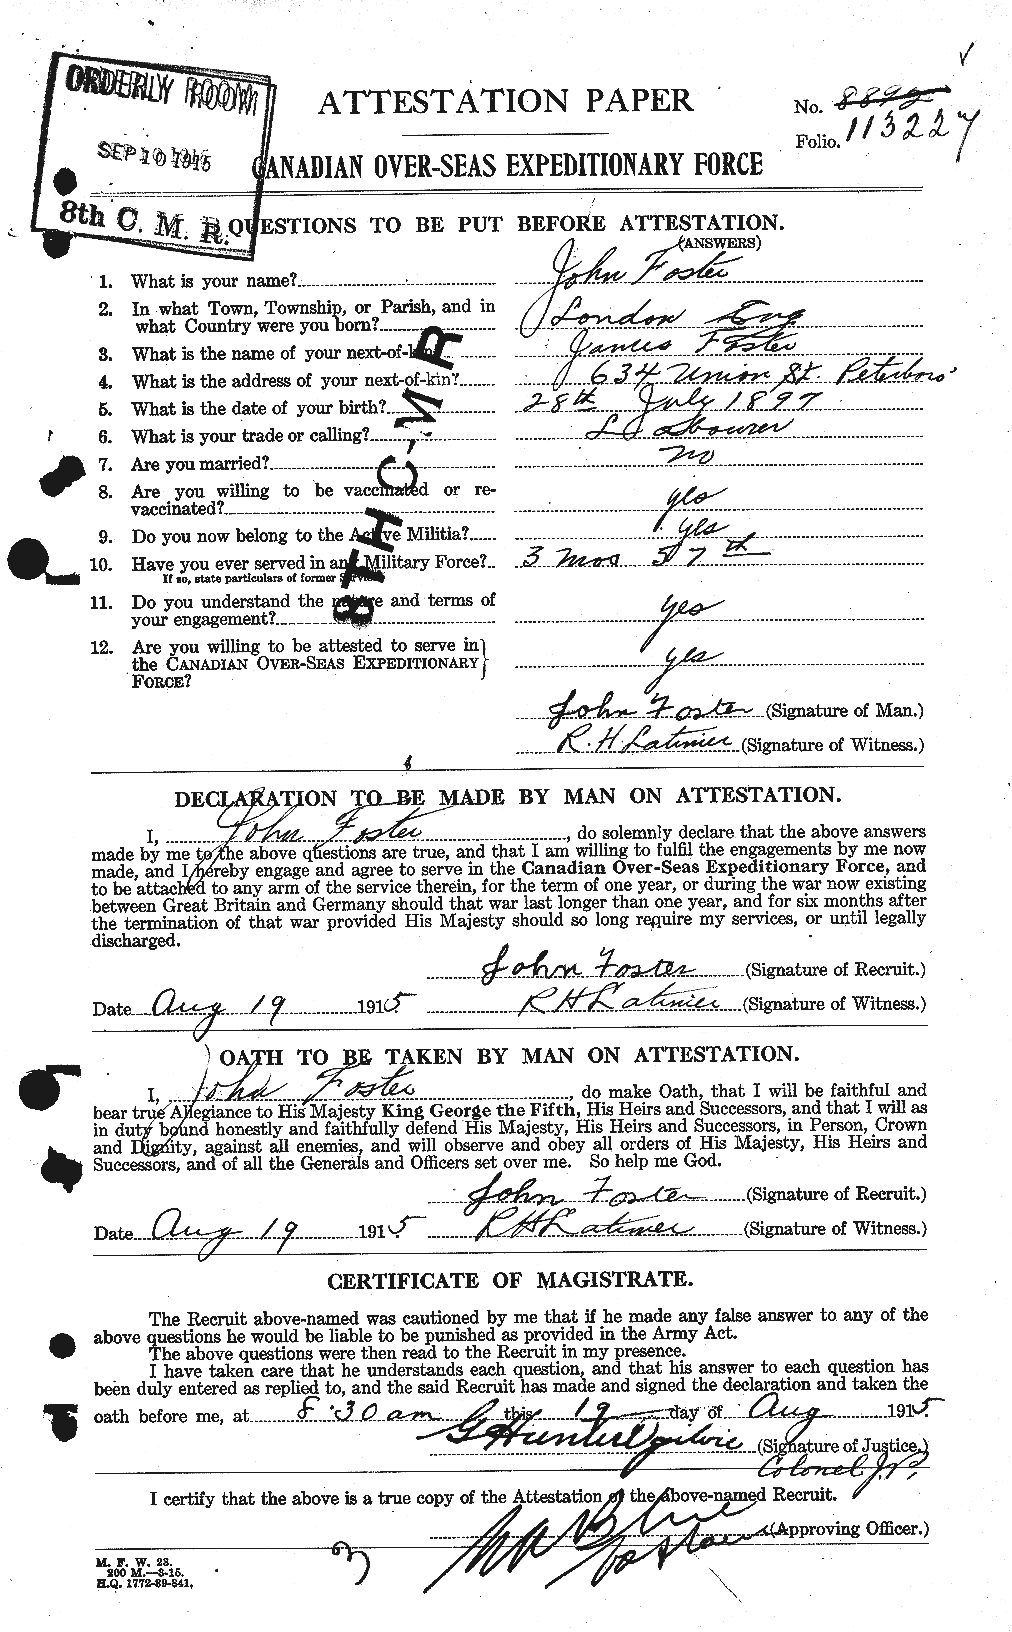 Dossiers du Personnel de la Première Guerre mondiale - CEC 333323a